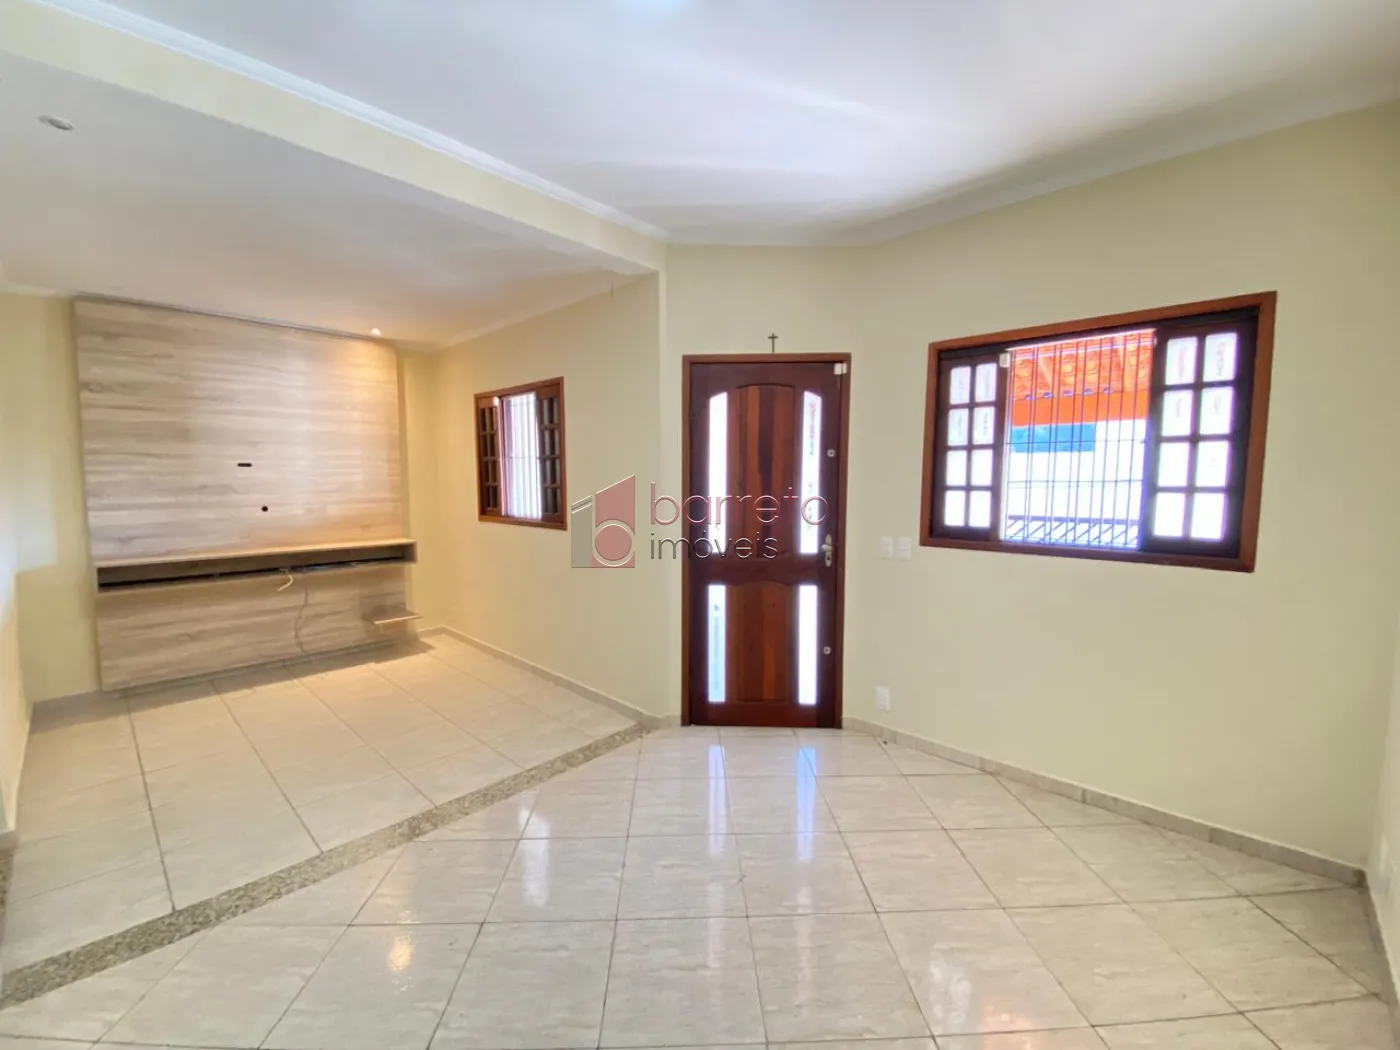 Comprar Casa / Padrão em Jundiaí R$ 638.000,00 - Foto 2